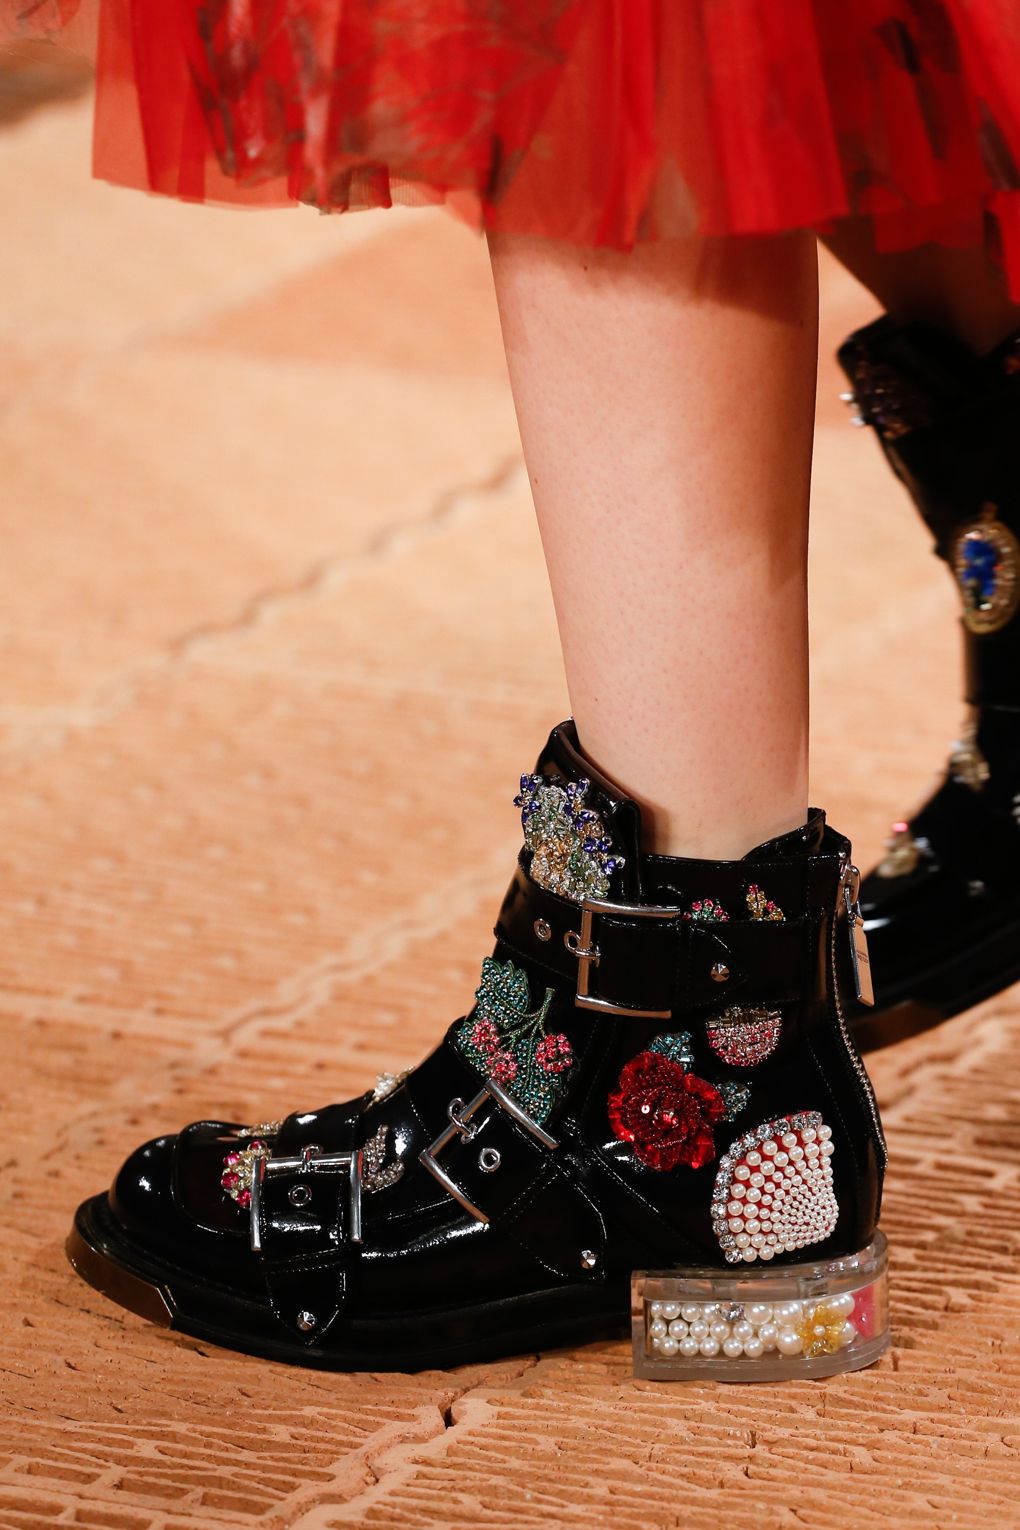 Giám đốc sáng tạo Sarah Burton của Alexander McQueen đã thổi hơi thở nữ tính và trẻ trung vào thiết kế combat boots truyền thống bằng những hình thêu hoa và đính đá thú vị.